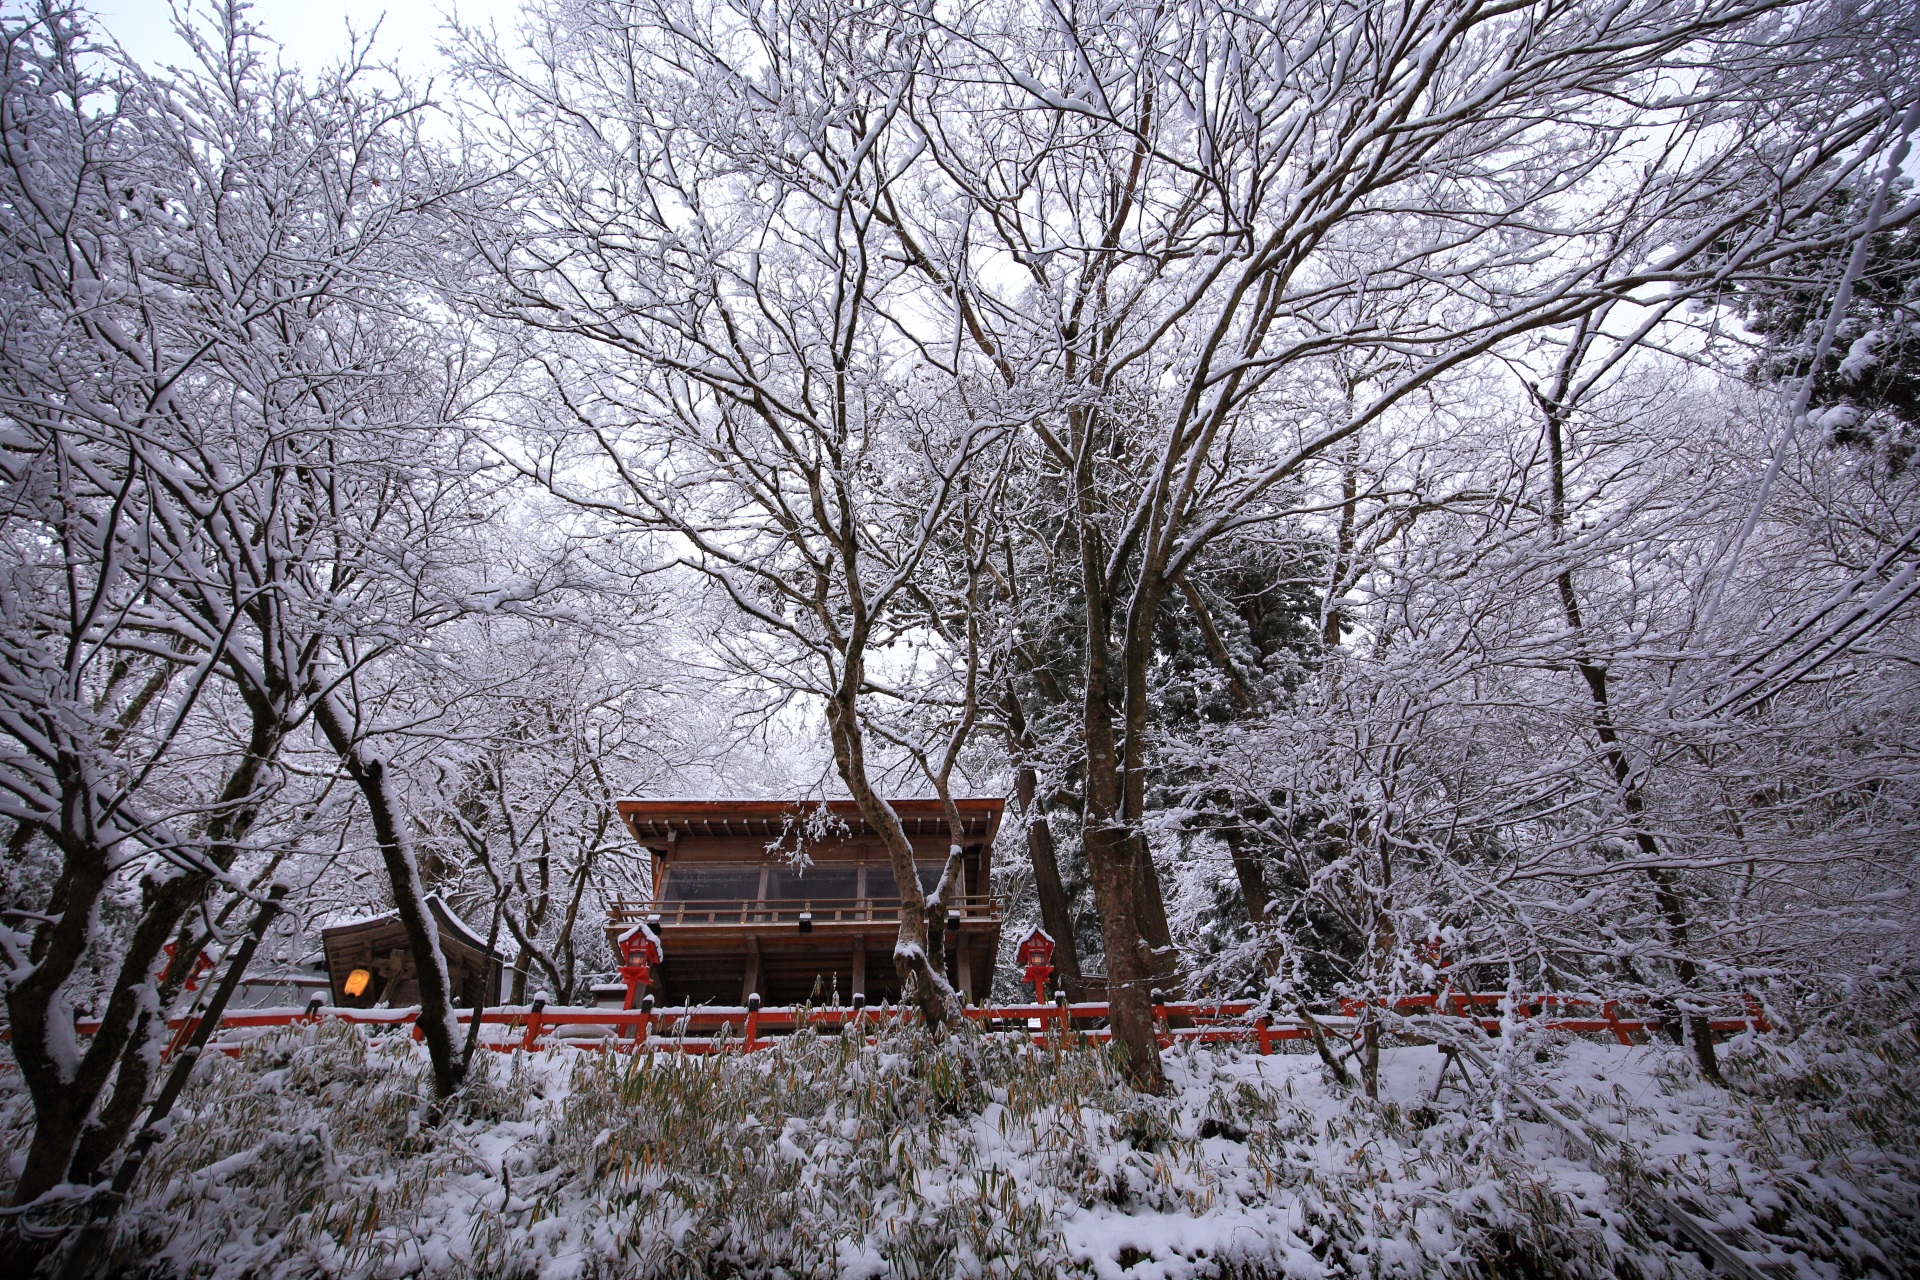 下から見上げた貴船神社の龍船閣と雪景色